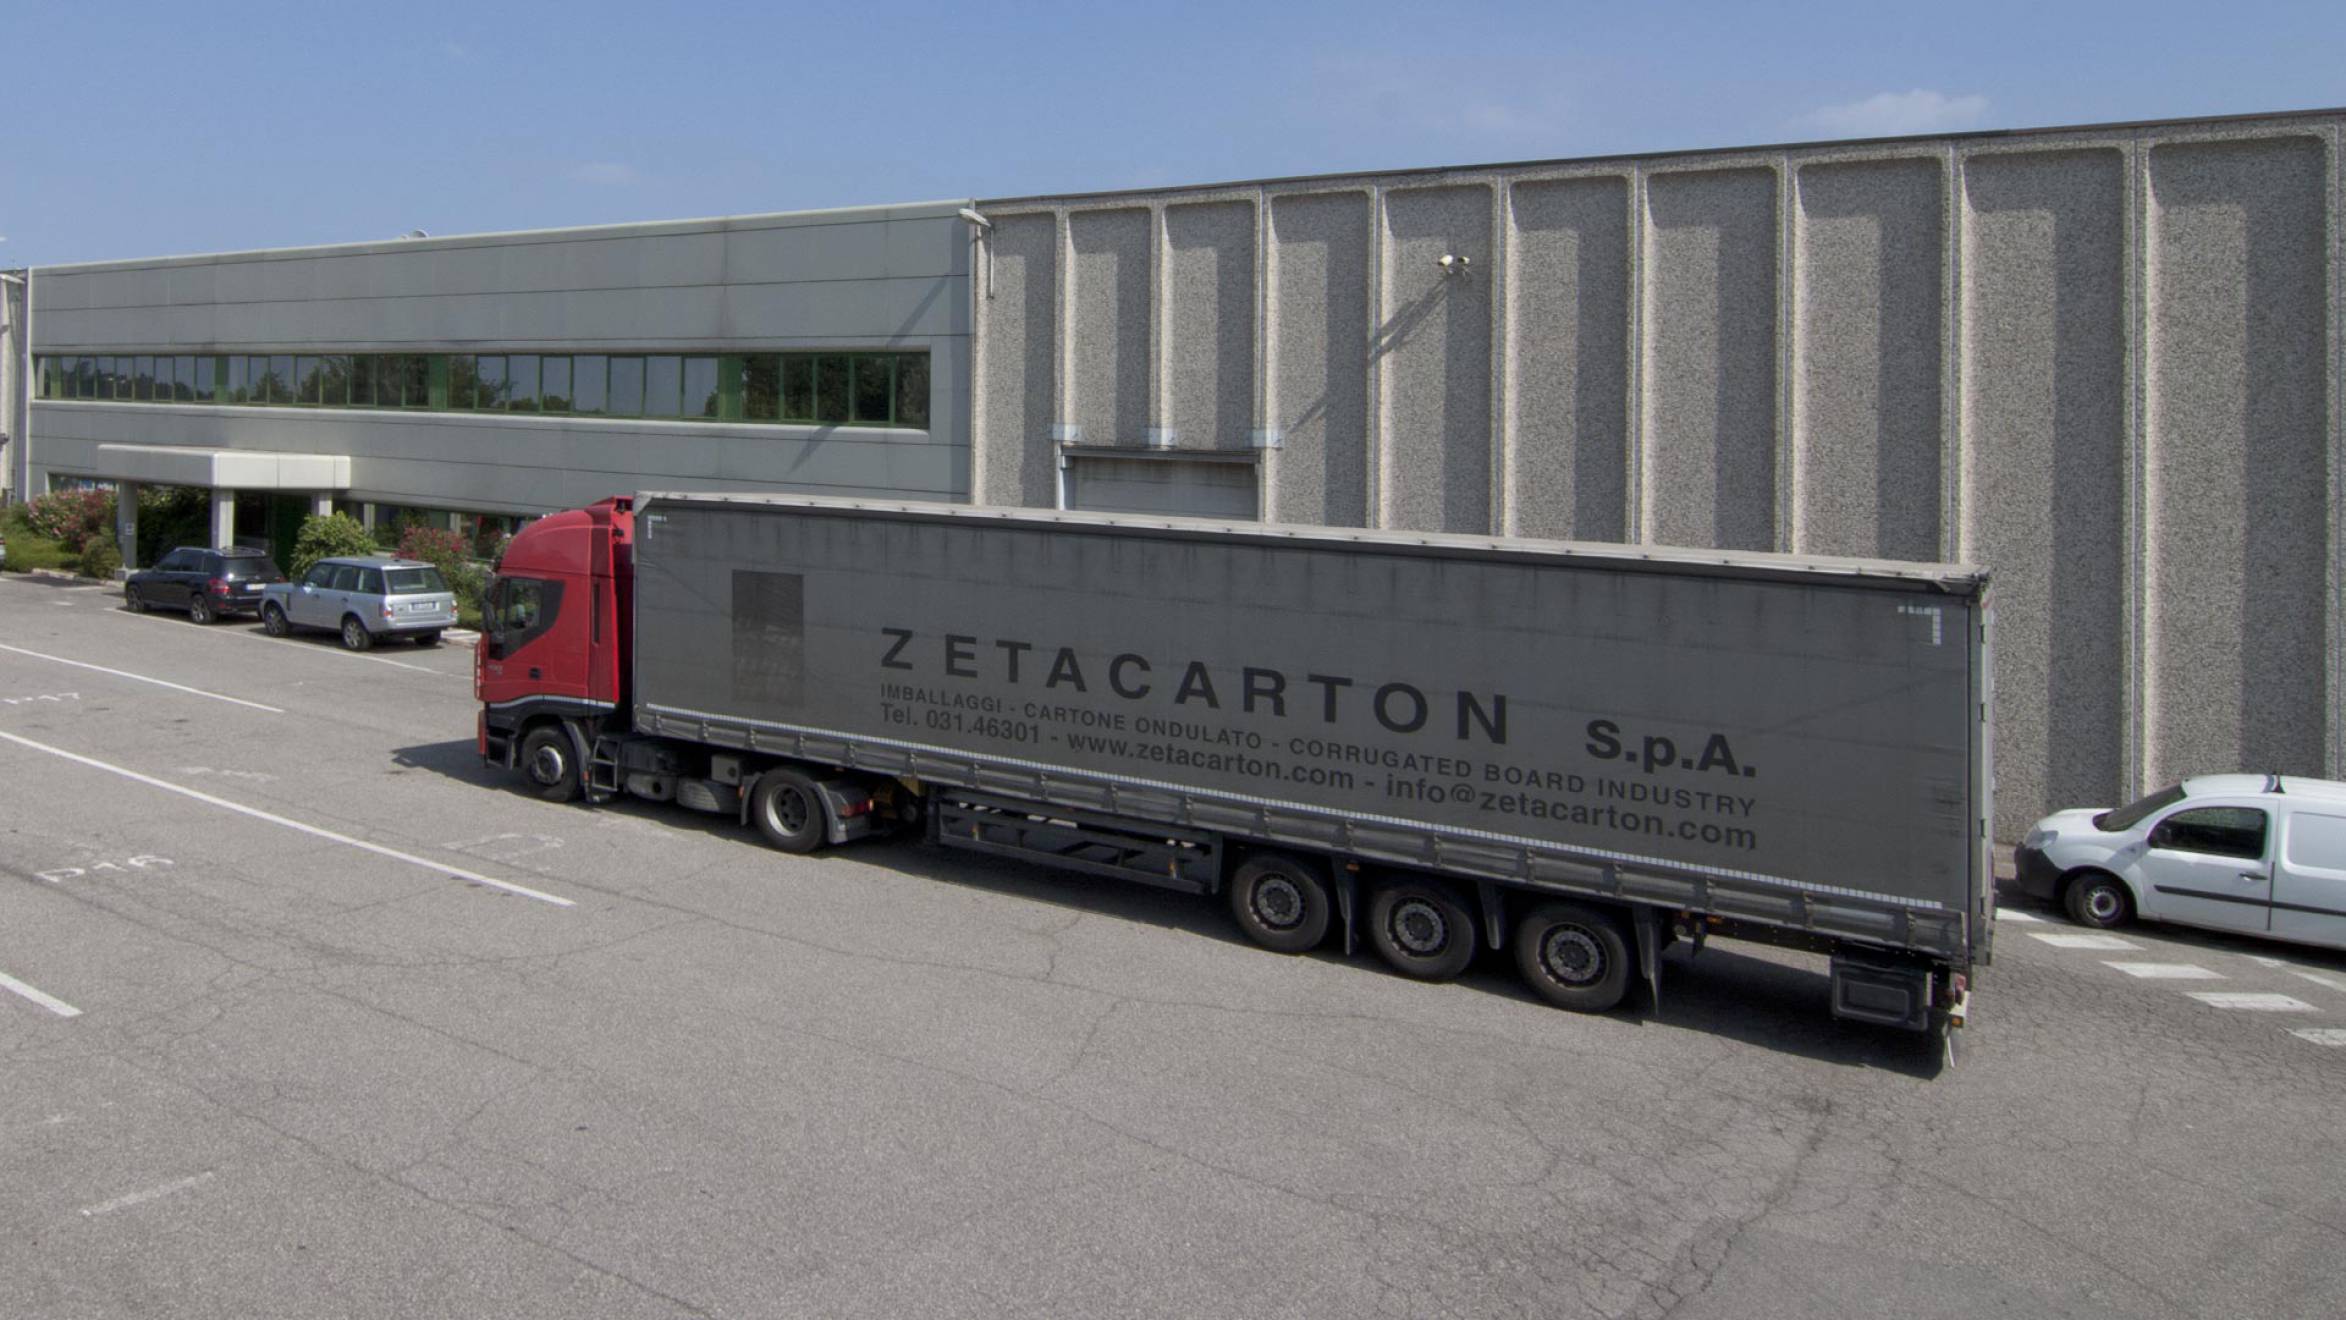 Esterno sede logistica Zetacarton servizio fotografico